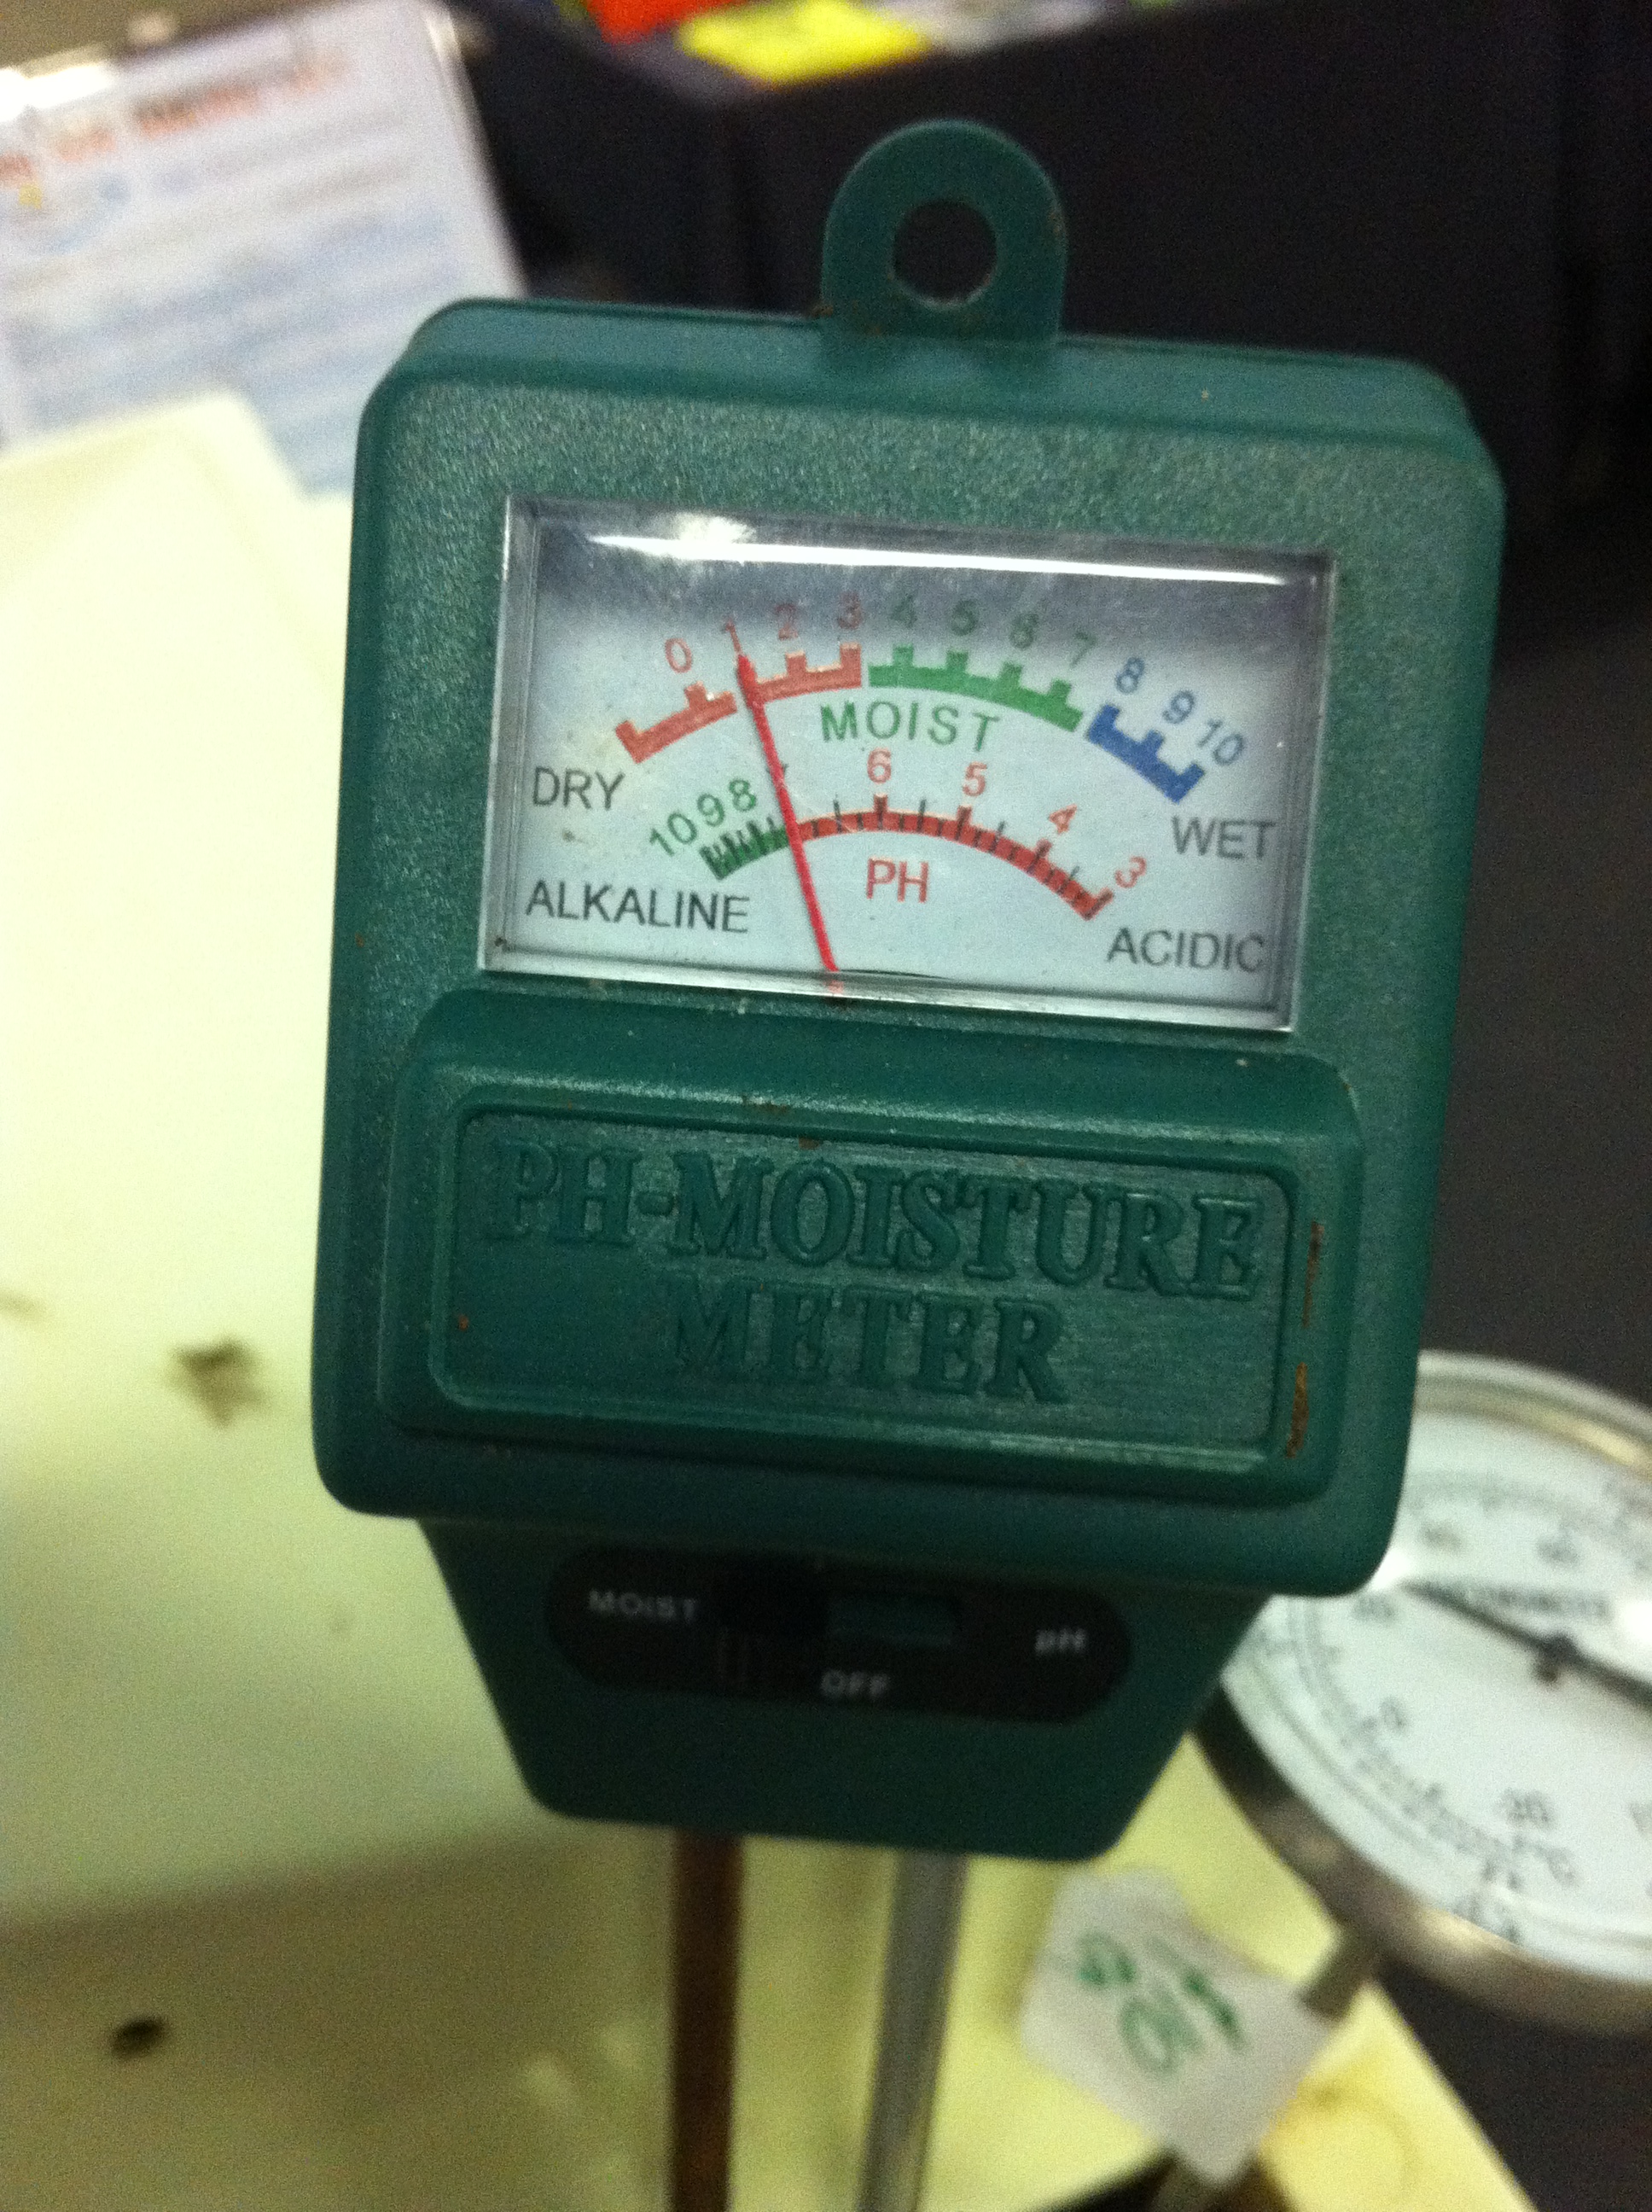 ph and moisture meter